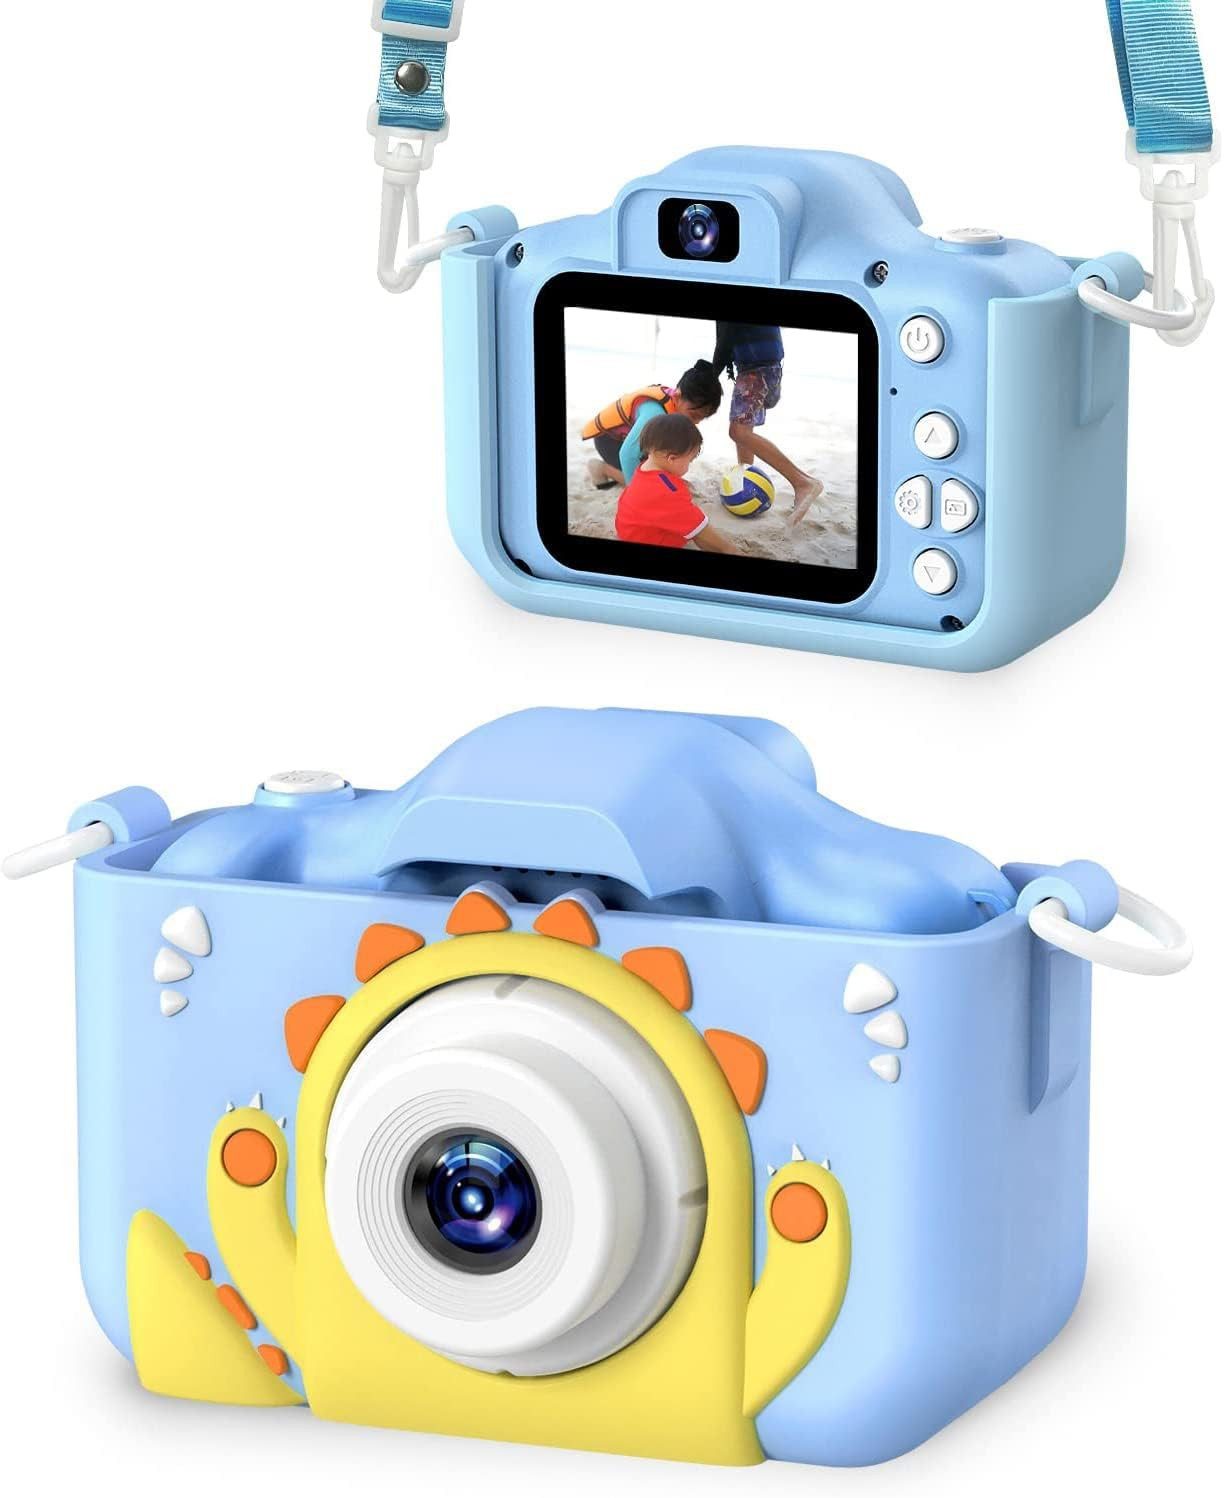 Dwfit Digital Selfie 3-12 jährige Mädchen und Jungen Kinderkamera (Kreativer Spaß für kleine Fotografen)